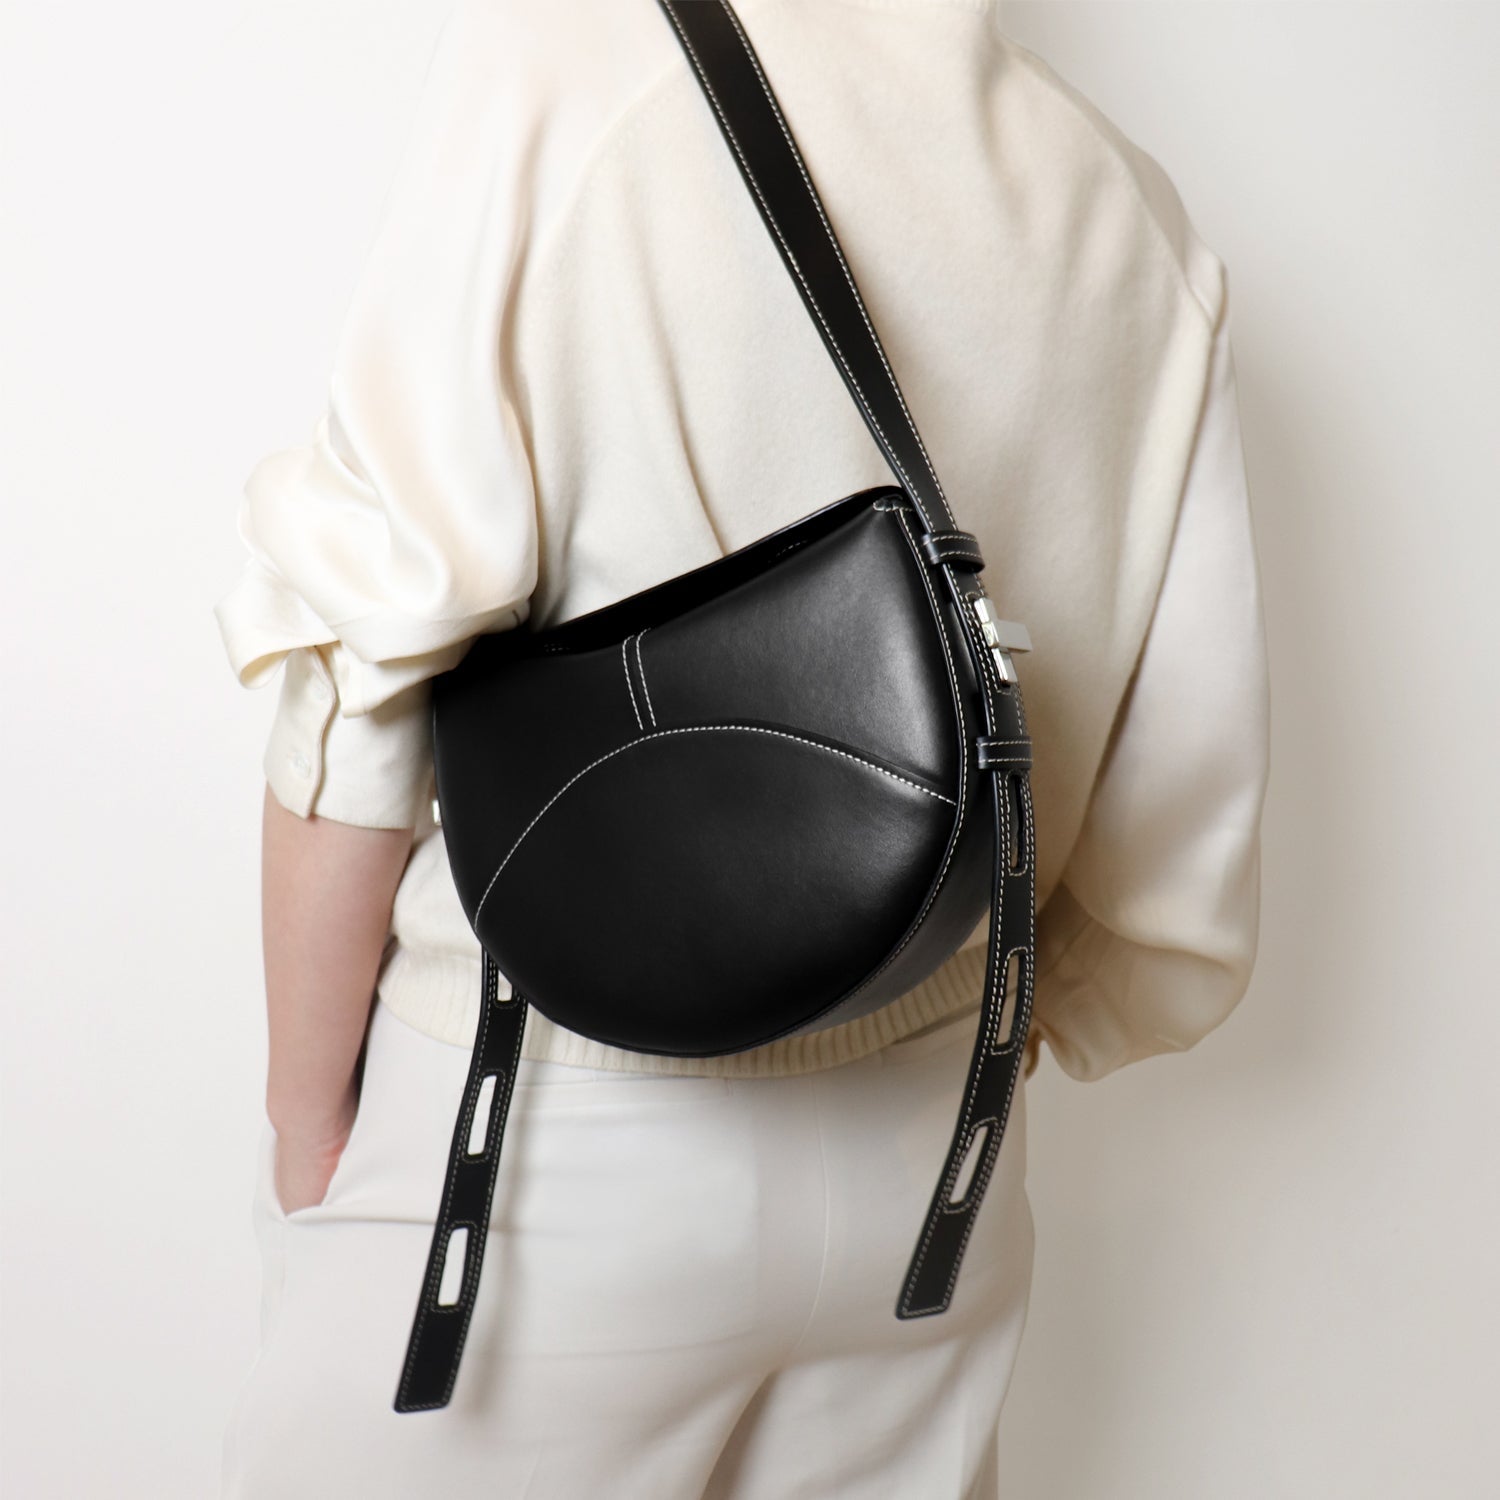 Shaker Twist Bag in black, worn by model